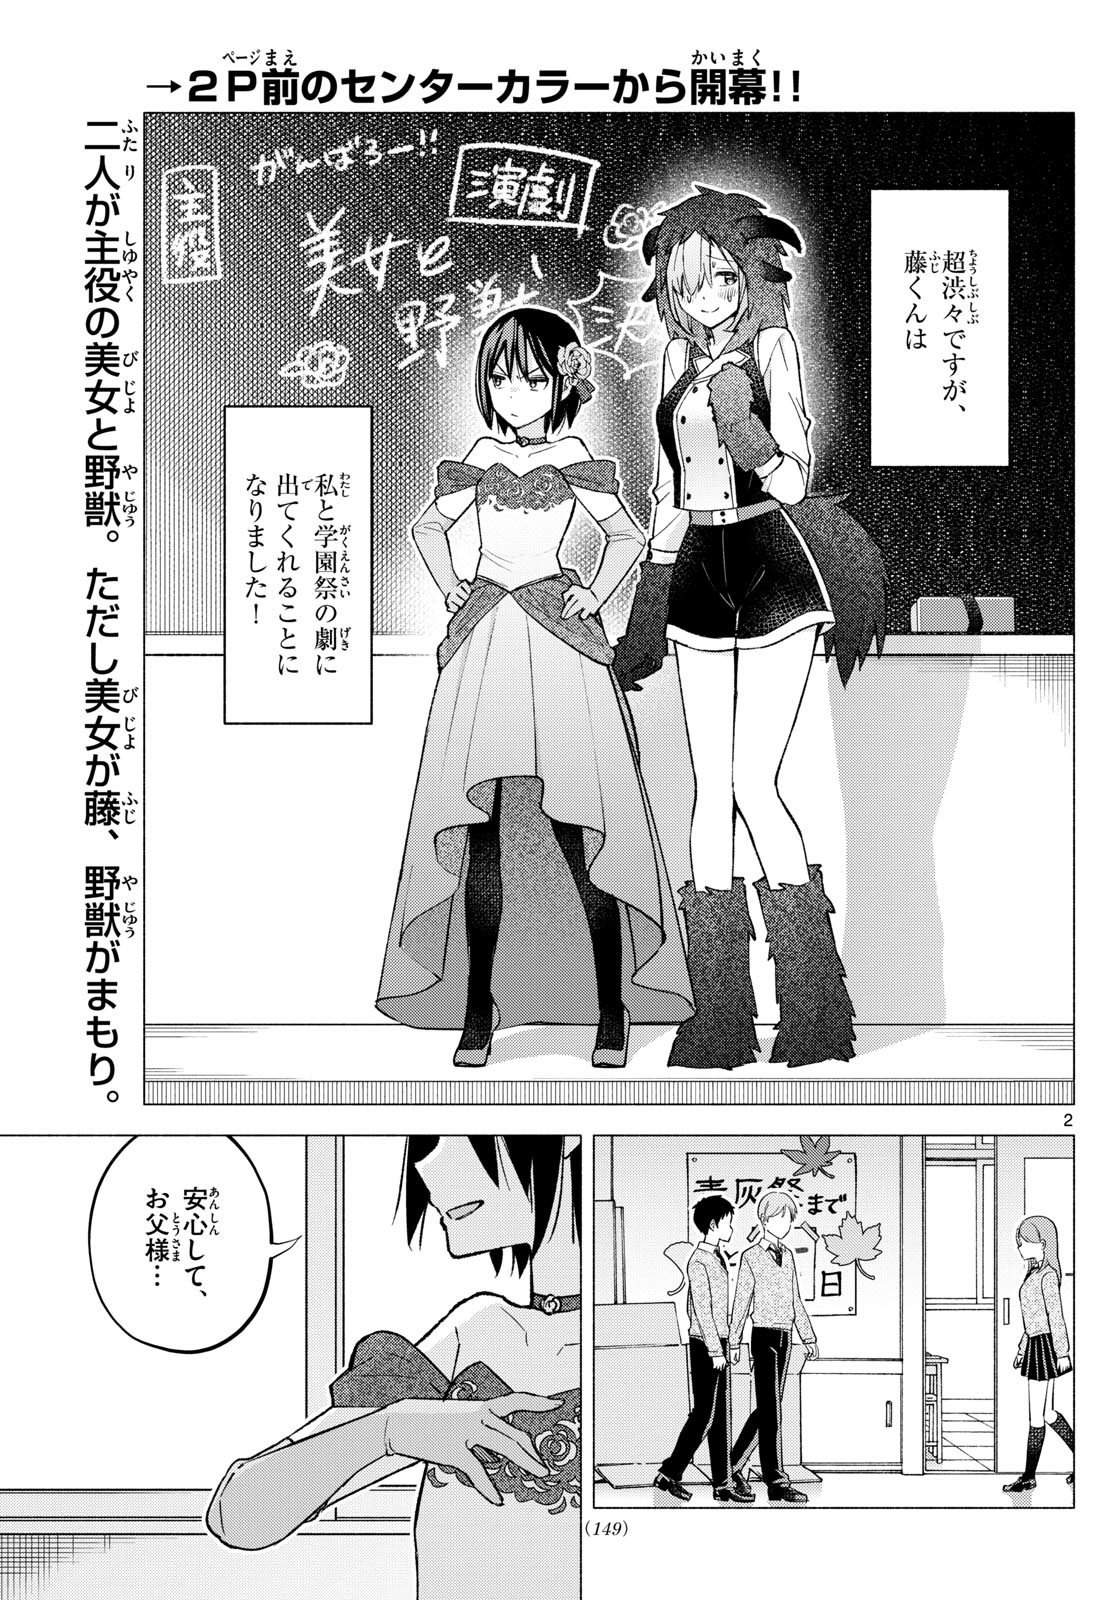 Kimi to Warui Koto ga Shitai - Chapter 062 - Page 2